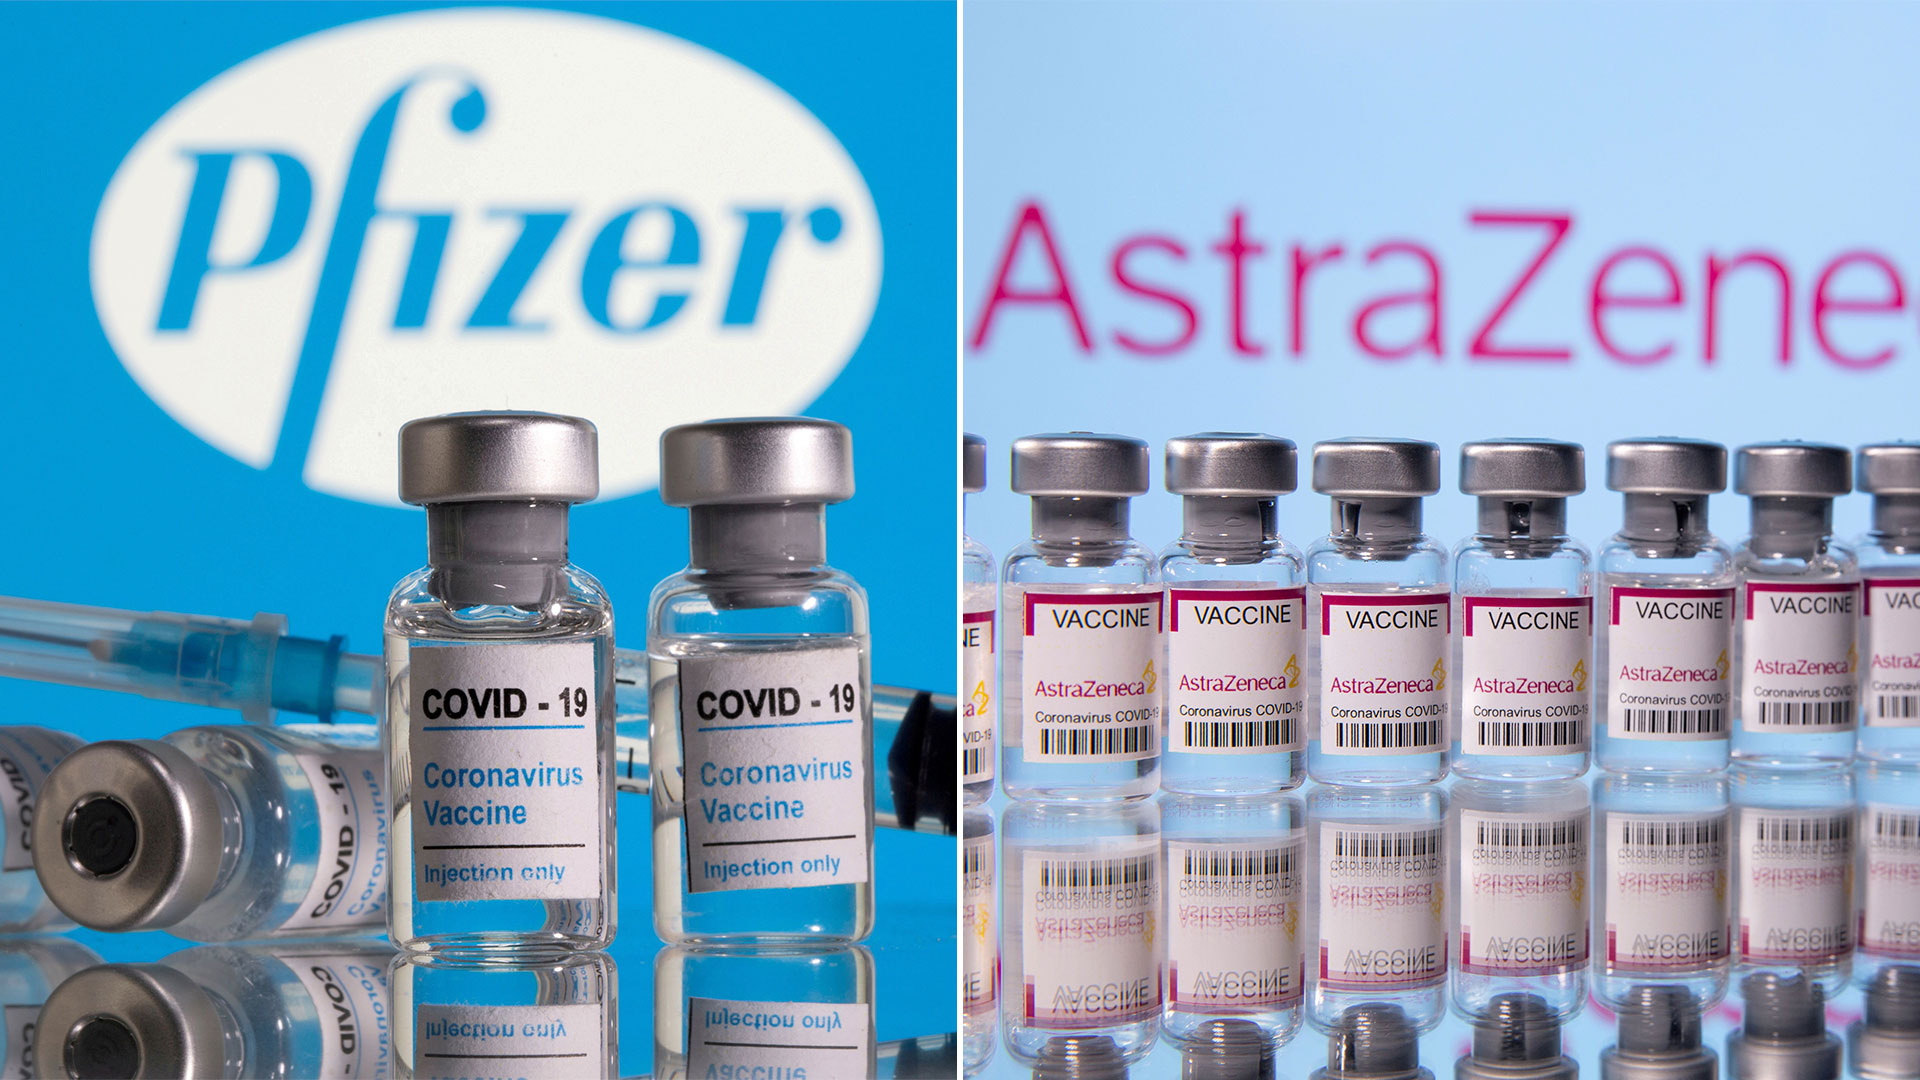 Un estudio publicado por The Lancet comparó la respuesta de las vacunas de Pfizer y AstraZeneca frente a la variante Delta del virus SARS-CoV-2